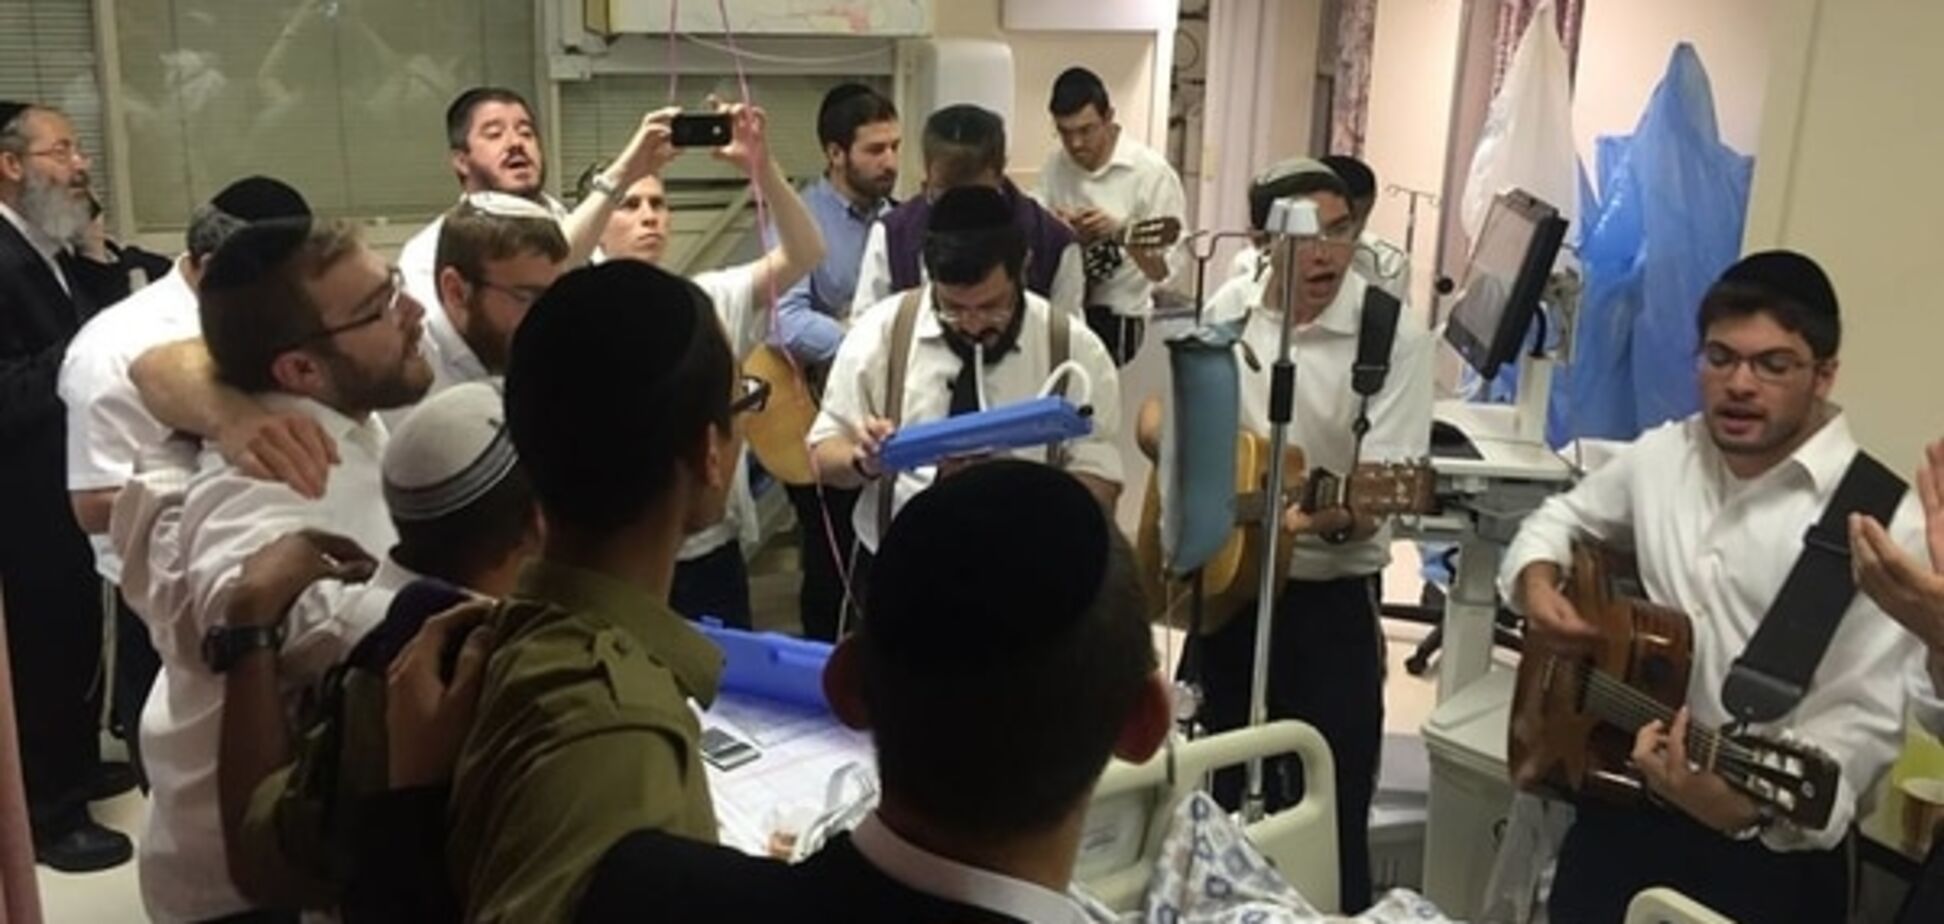 Фото из реанимации в Израиле поразило соцсети: как спасали украинского еврея, раненого террористами